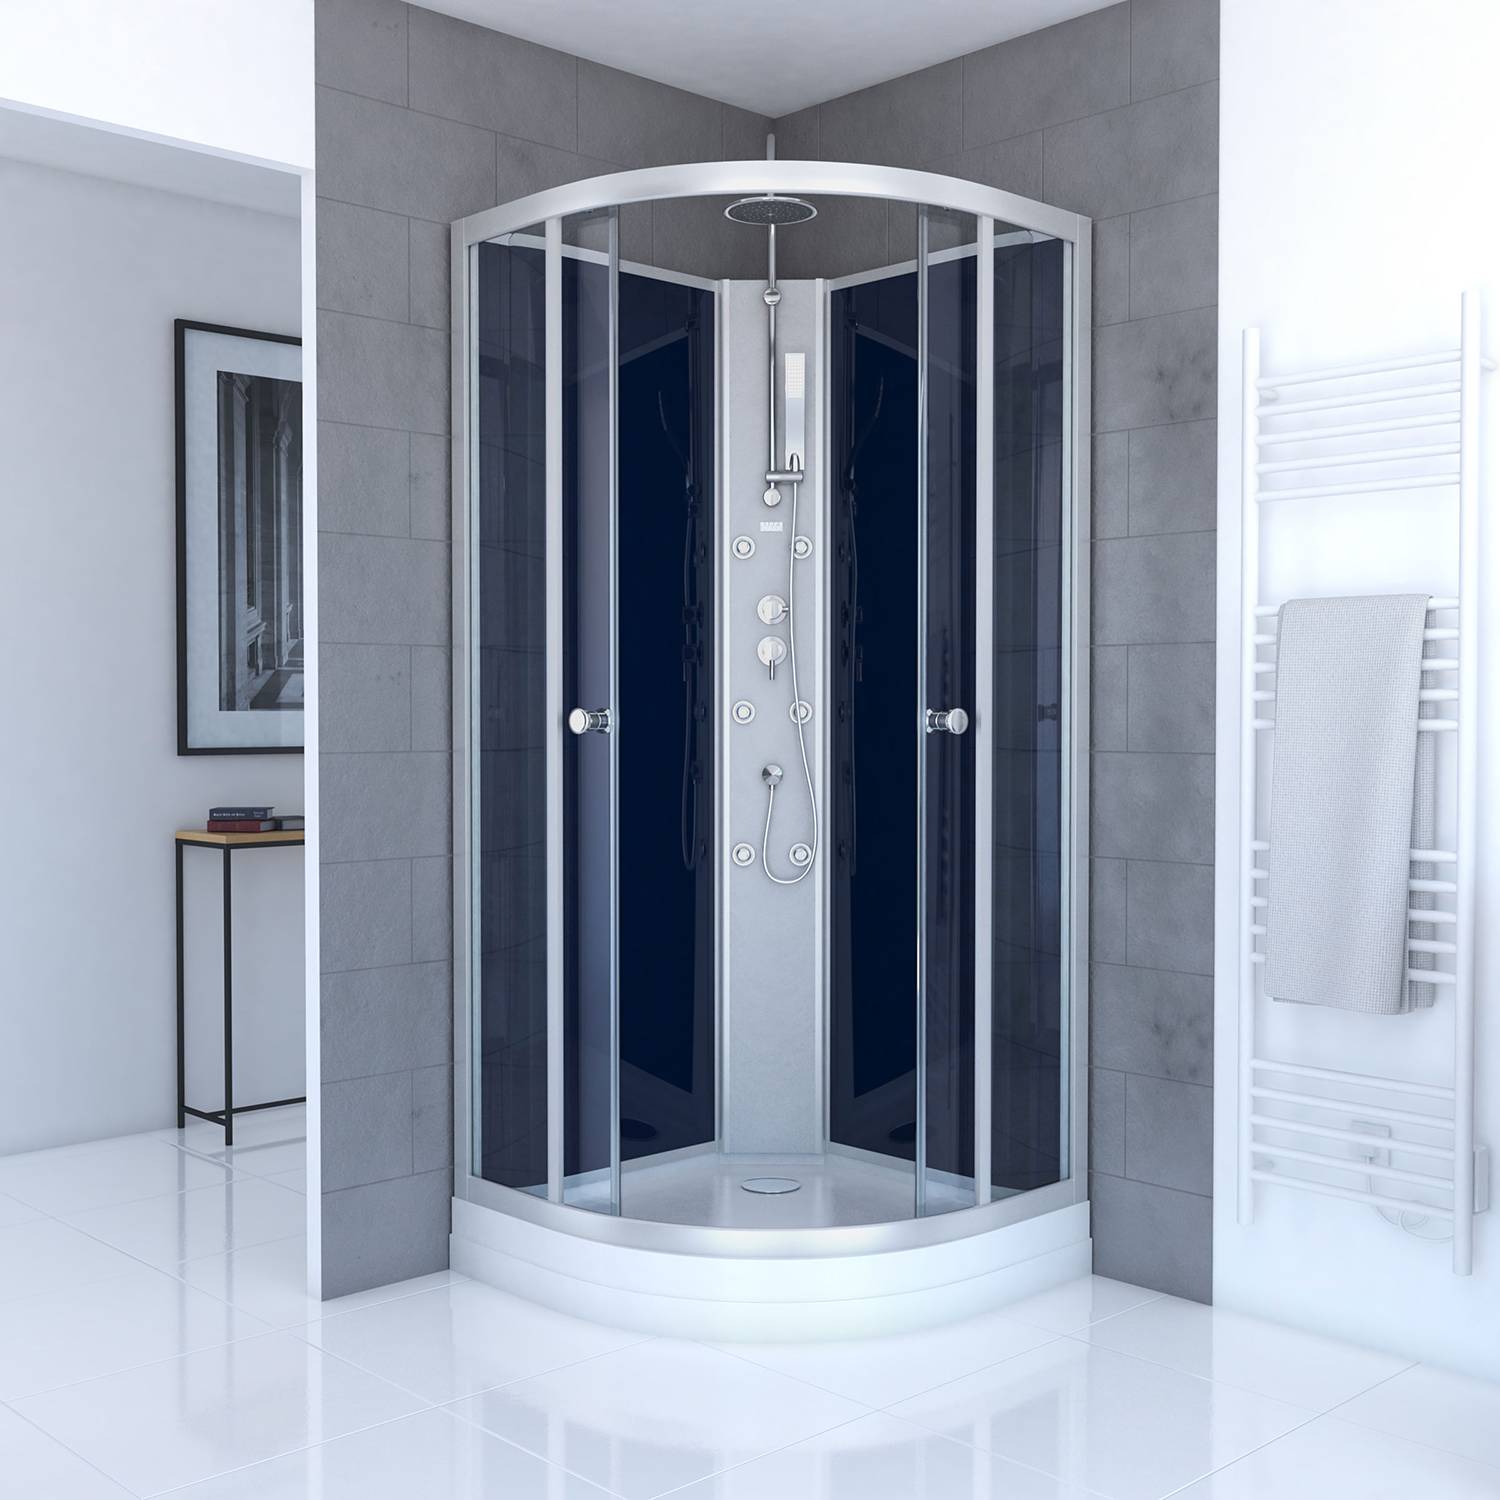 Duschen in Preisvergleich | 24 Blau Moebel